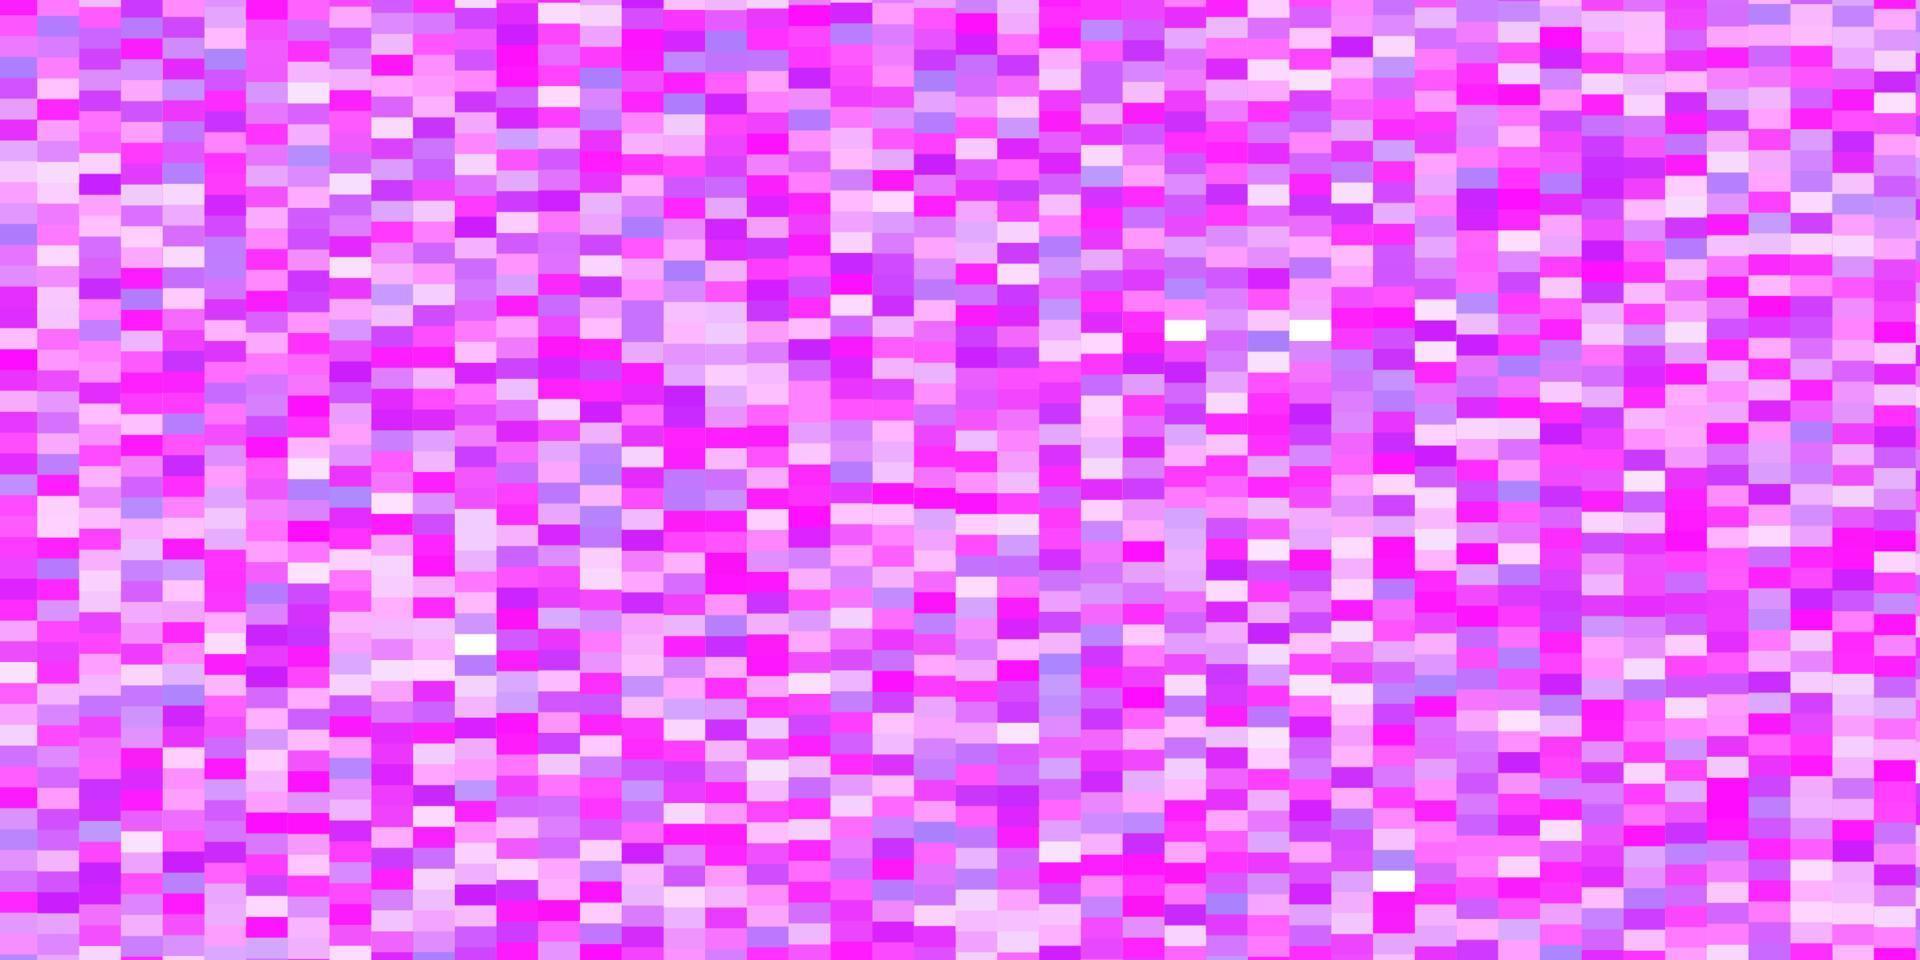 modèle de vecteur violet clair, rose dans les rectangles.